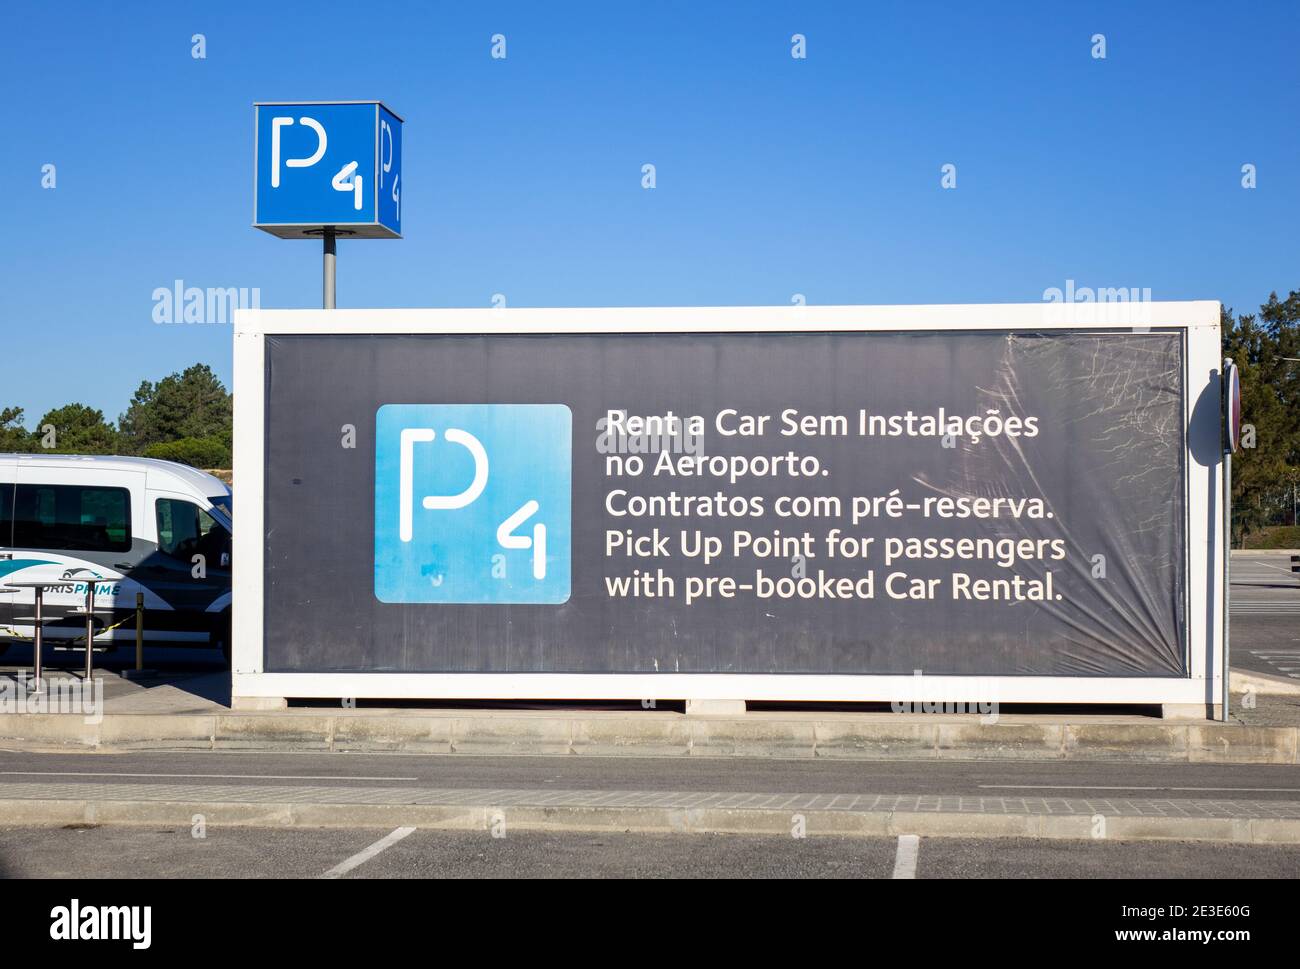 Bureau de location de voitures dans le parking P4 de l'aéroport de Faro L'Algarve Portugal Banque D'Images